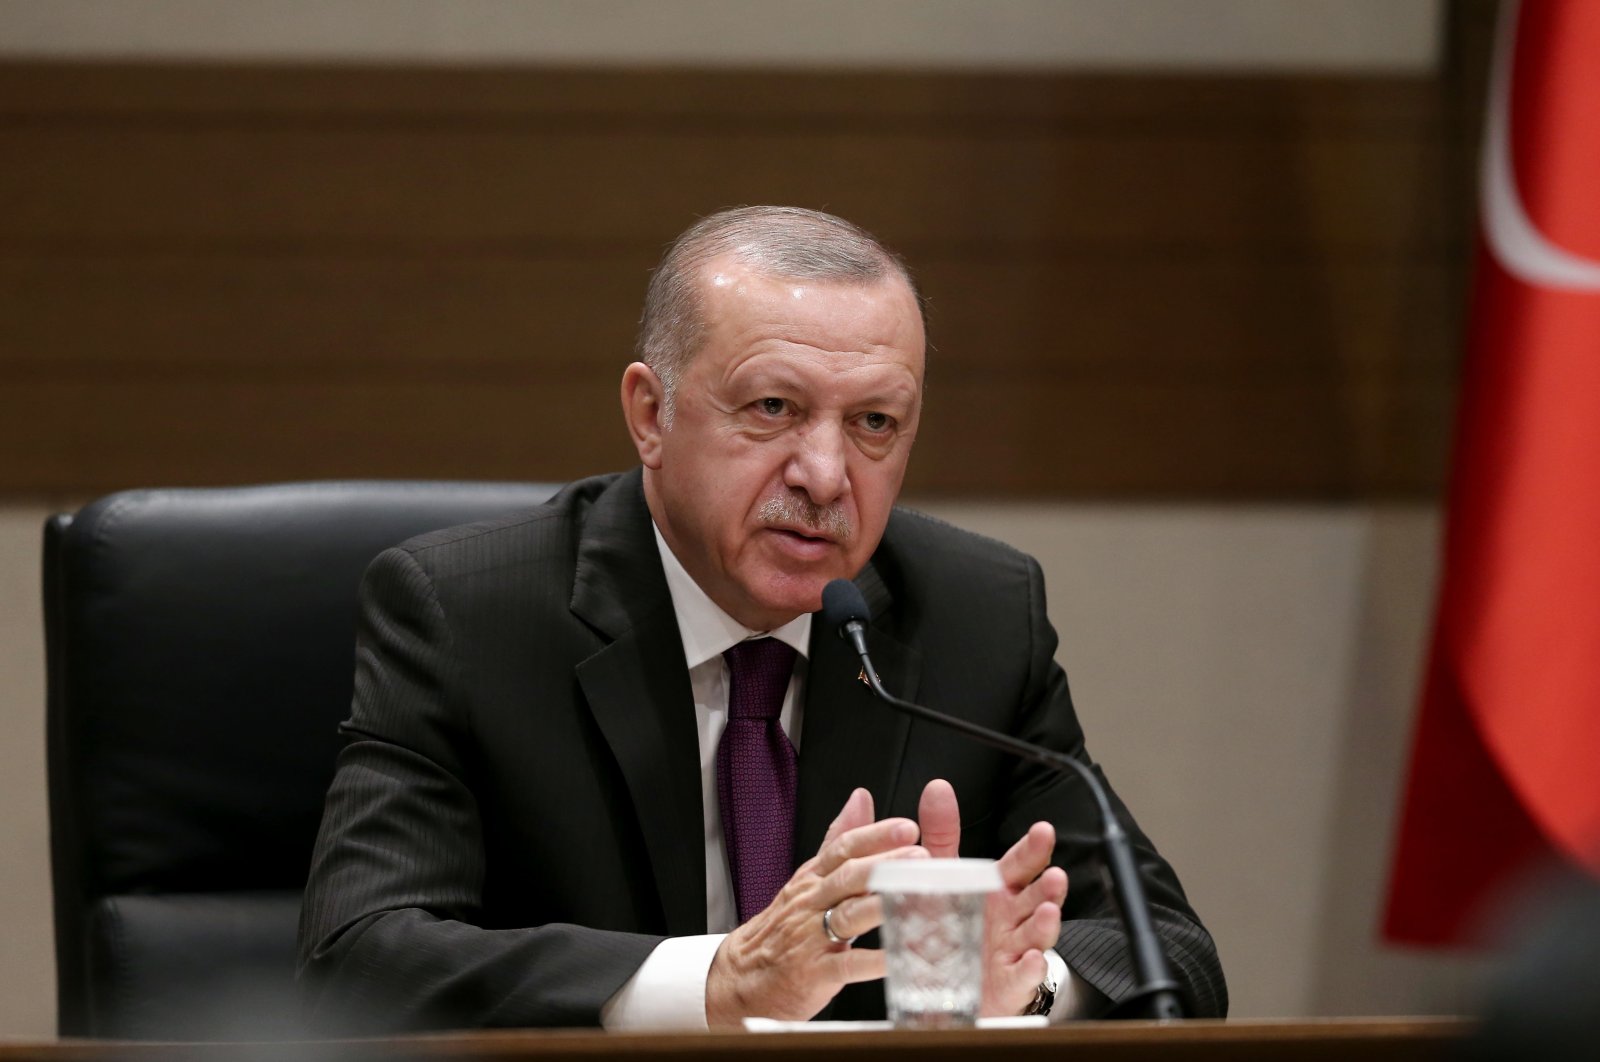 Erdogan kritikon trazirat në Kapitol: Turp për demokracinë